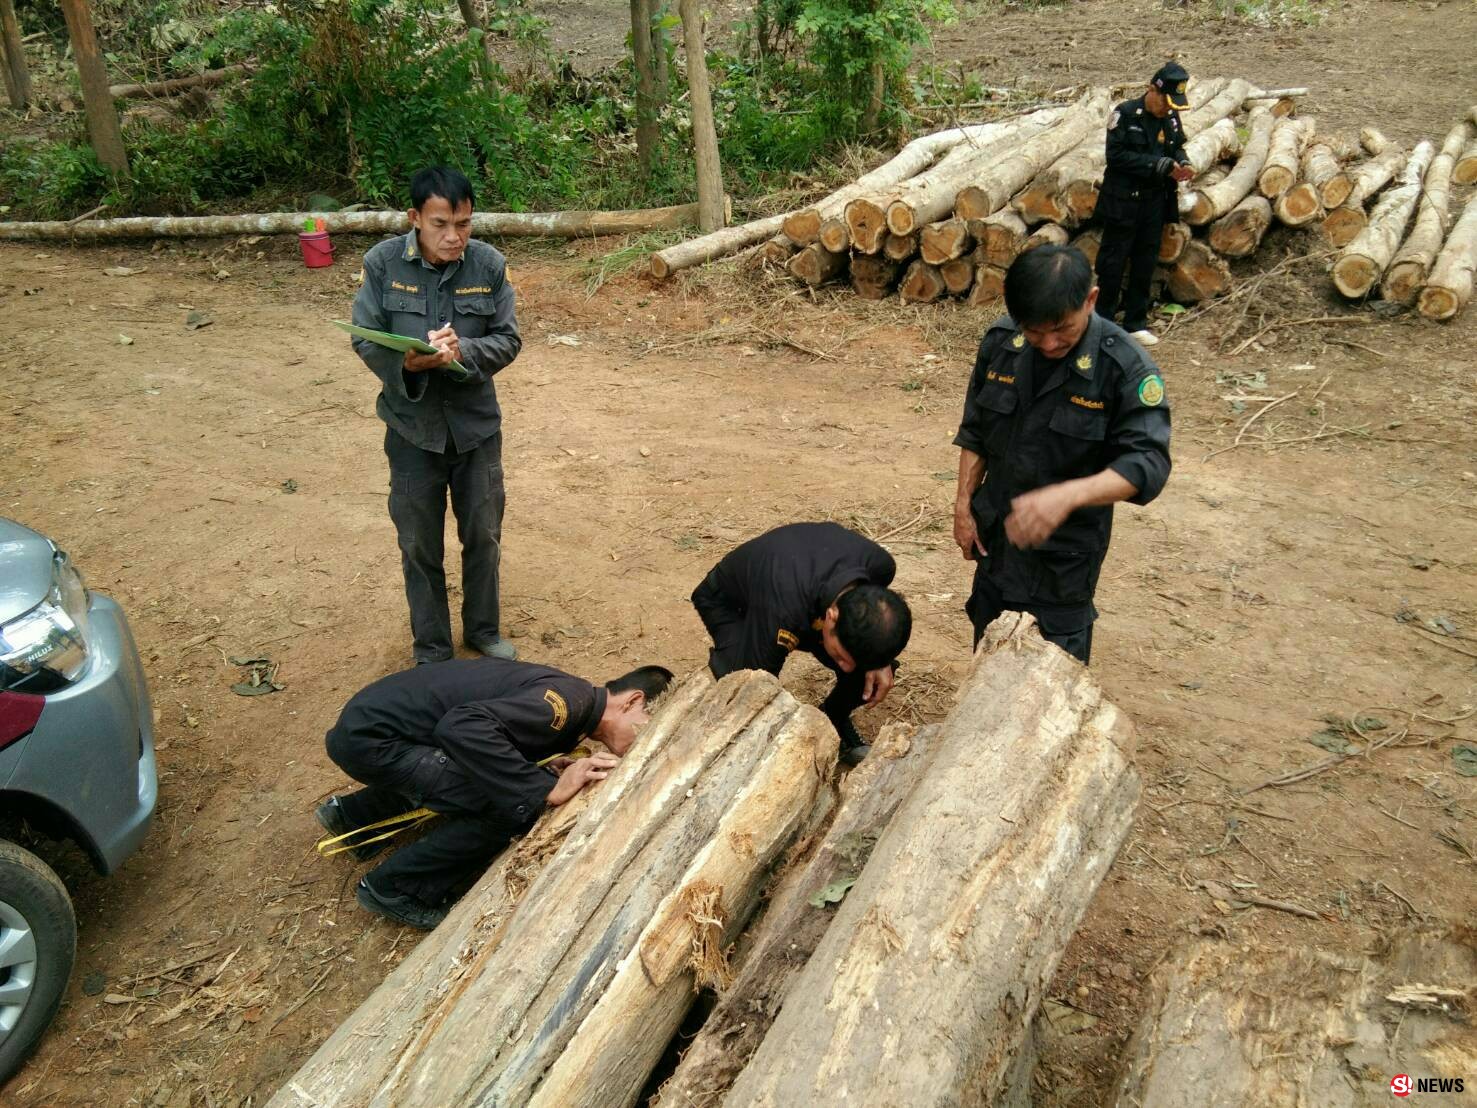 ทหาร-ตำรวจ บุกยึดไม้สักกว่า147 ท่อน เขตป่าสงวนลำปาง- ไร้เงาผู้ครอบครอง 